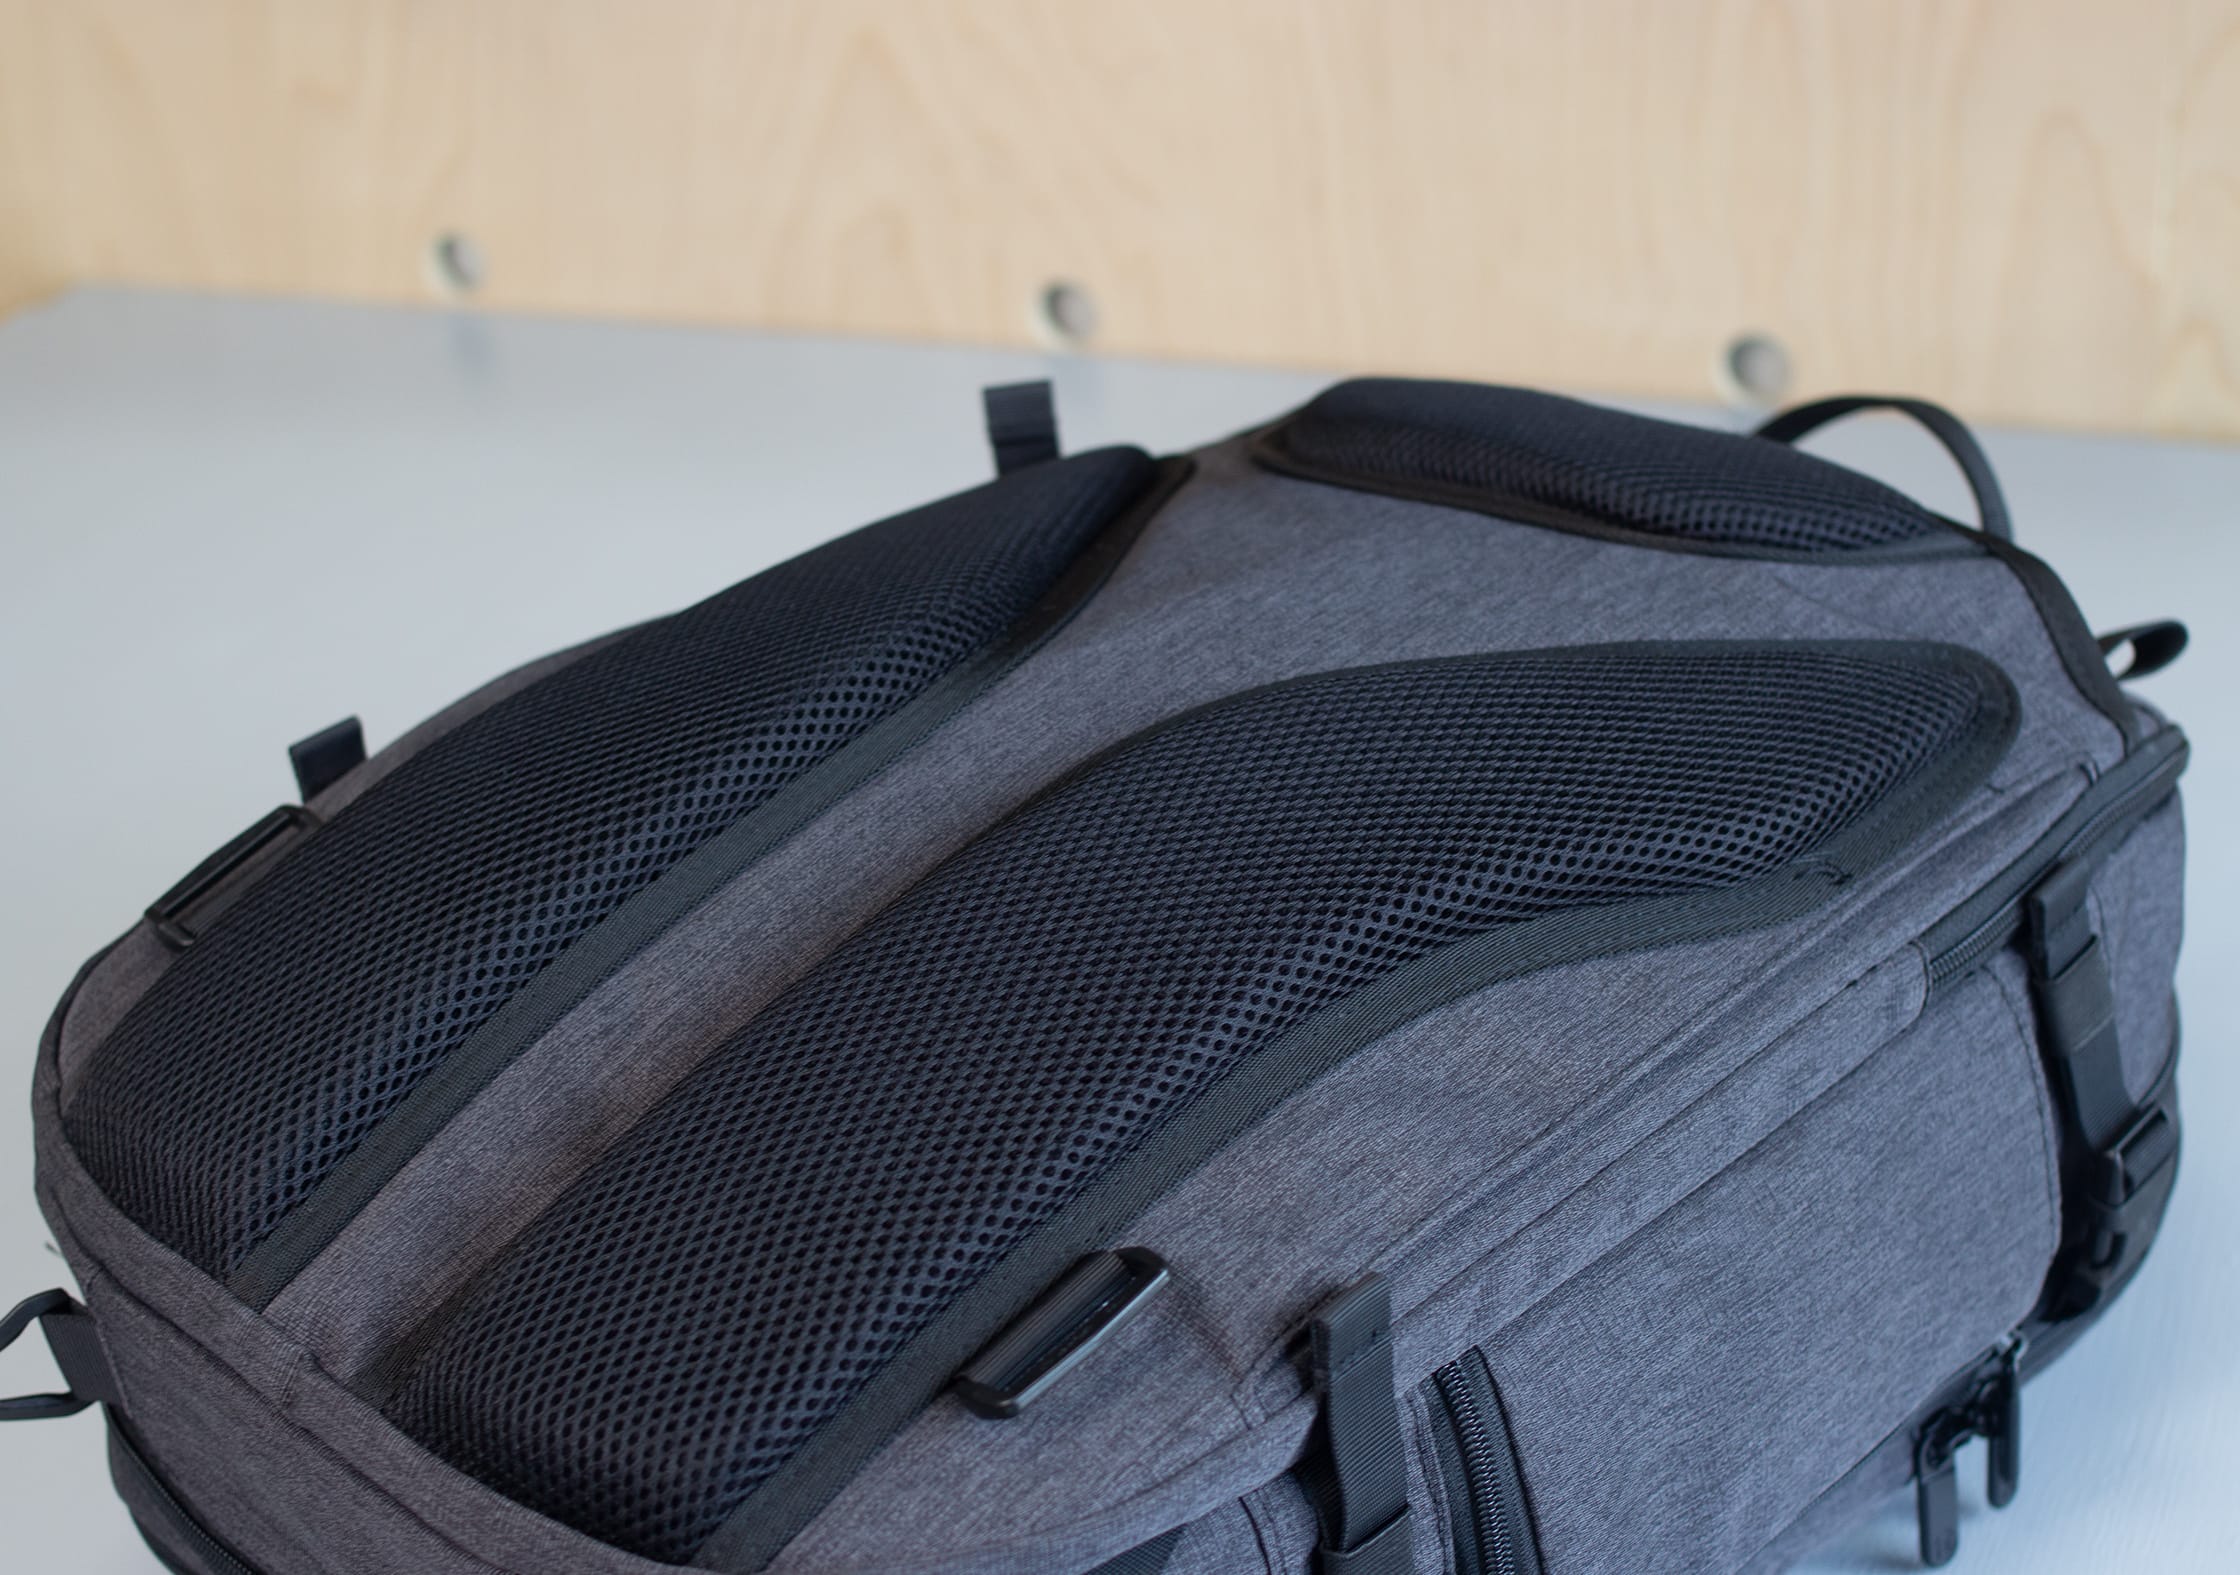 Tortuga Setout Divide Backpack Hidden Straps / Padded Mesh Back Panel